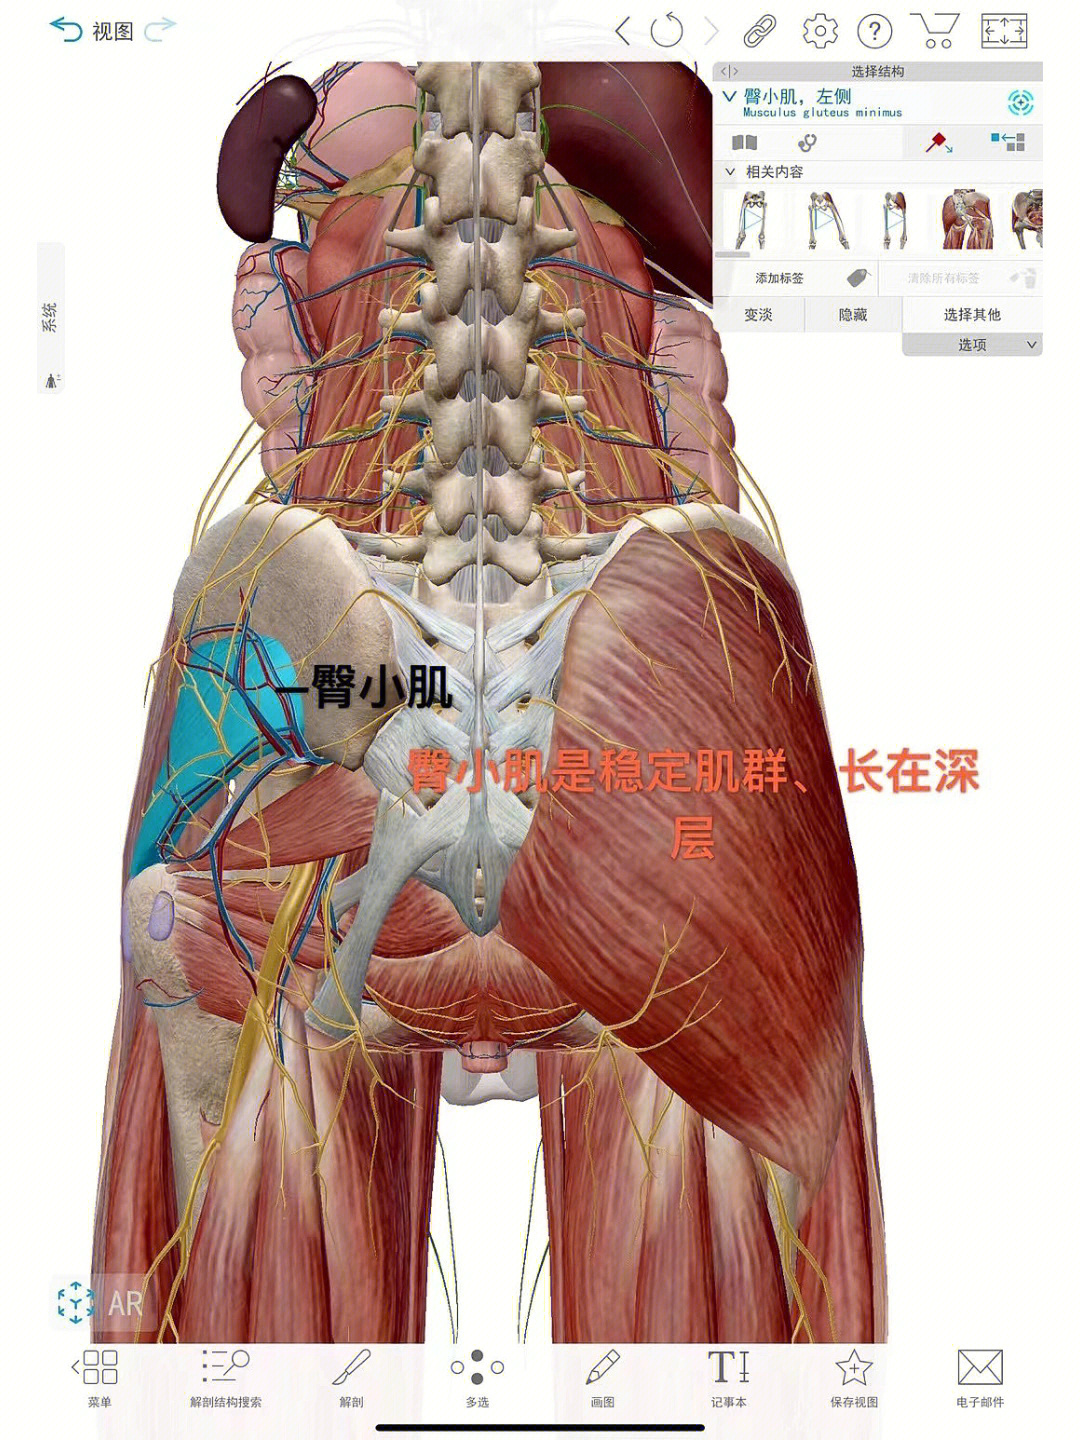 在髋关节屈,伸,内收,外展,内旋,外旋等方向运动中94臀中肌主要作用